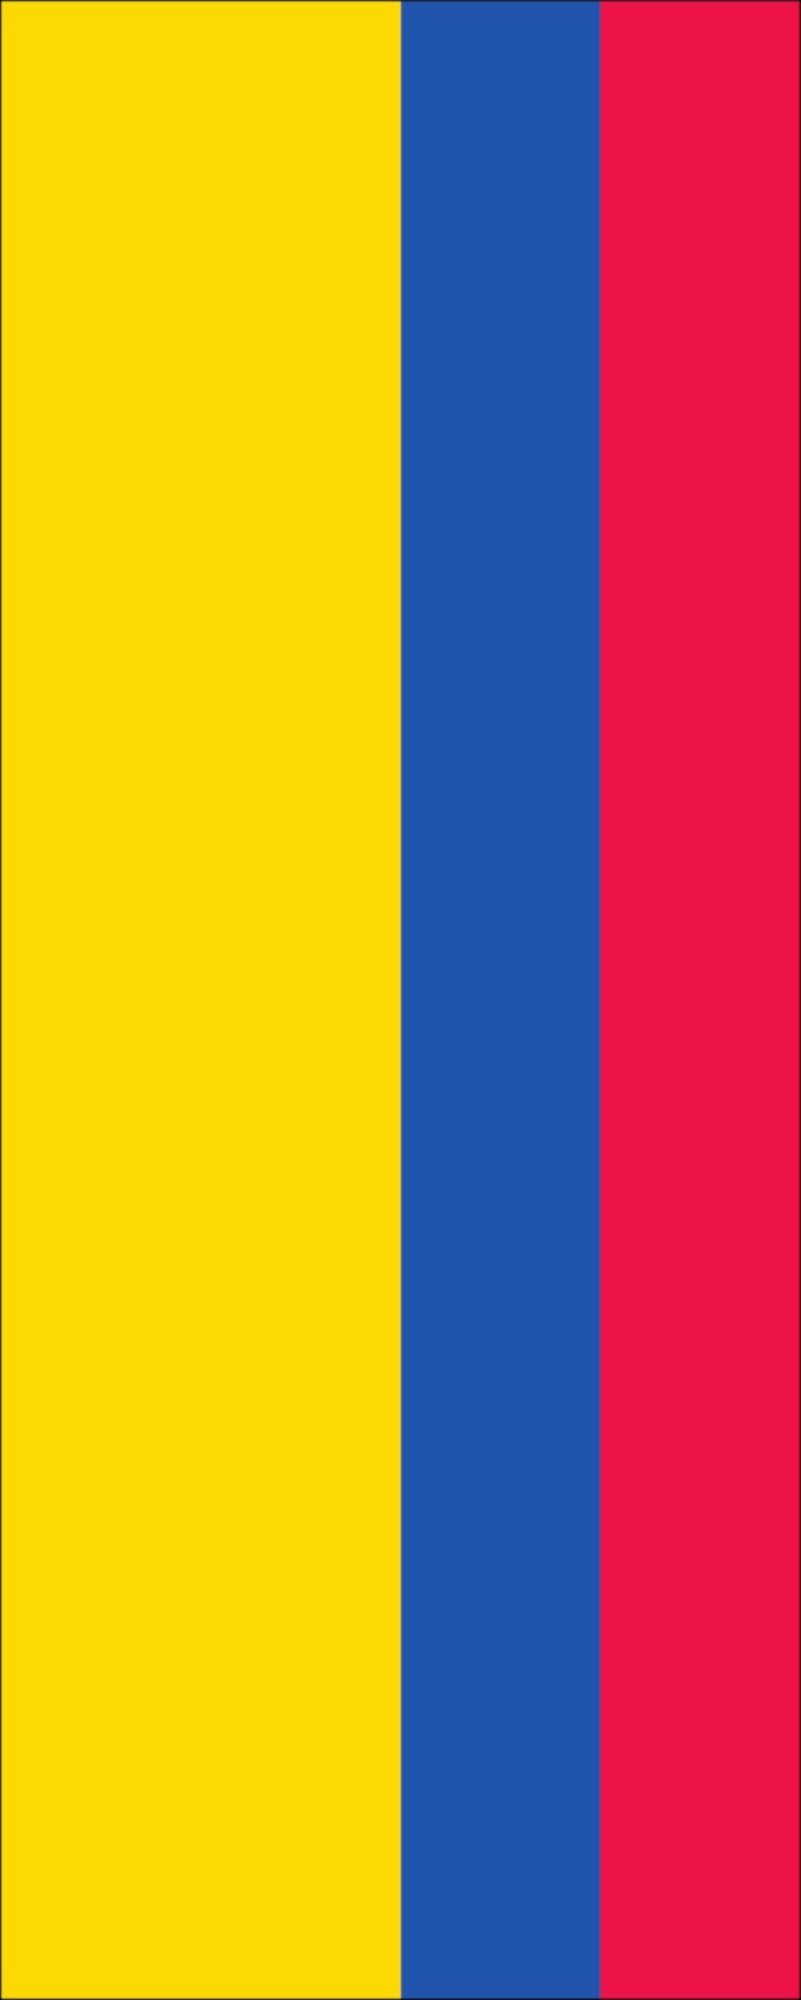 g/m² Hochformat flaggenmeer Flagge 110 Flagge Kolumbien